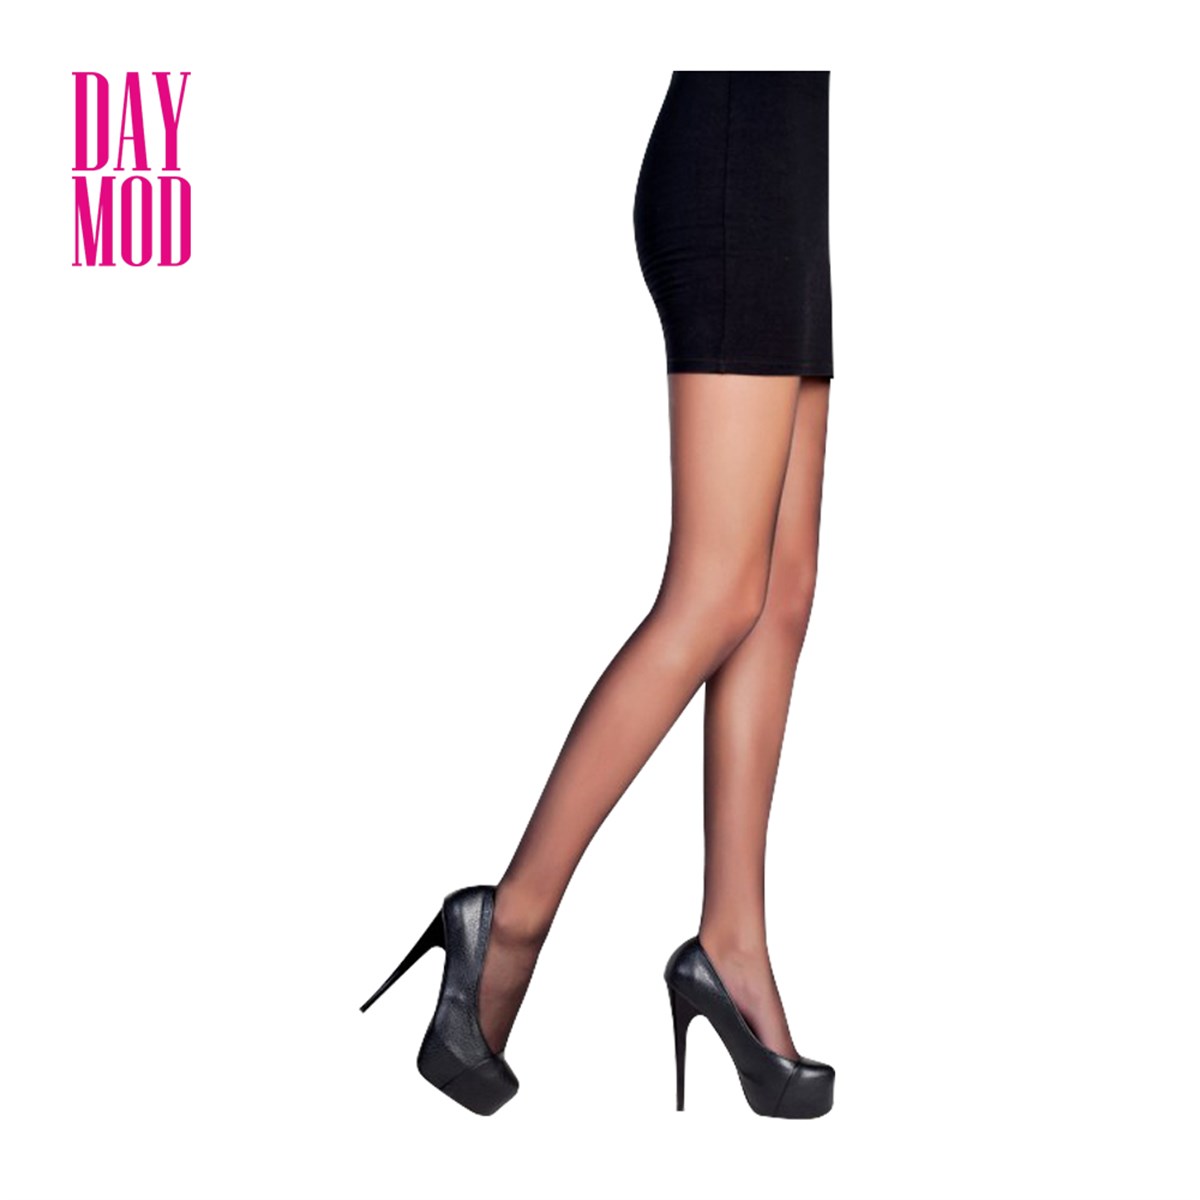 DayMod Klasik 20 Den Külotlu Çorap 500/Siyah Beden.3 - Platin